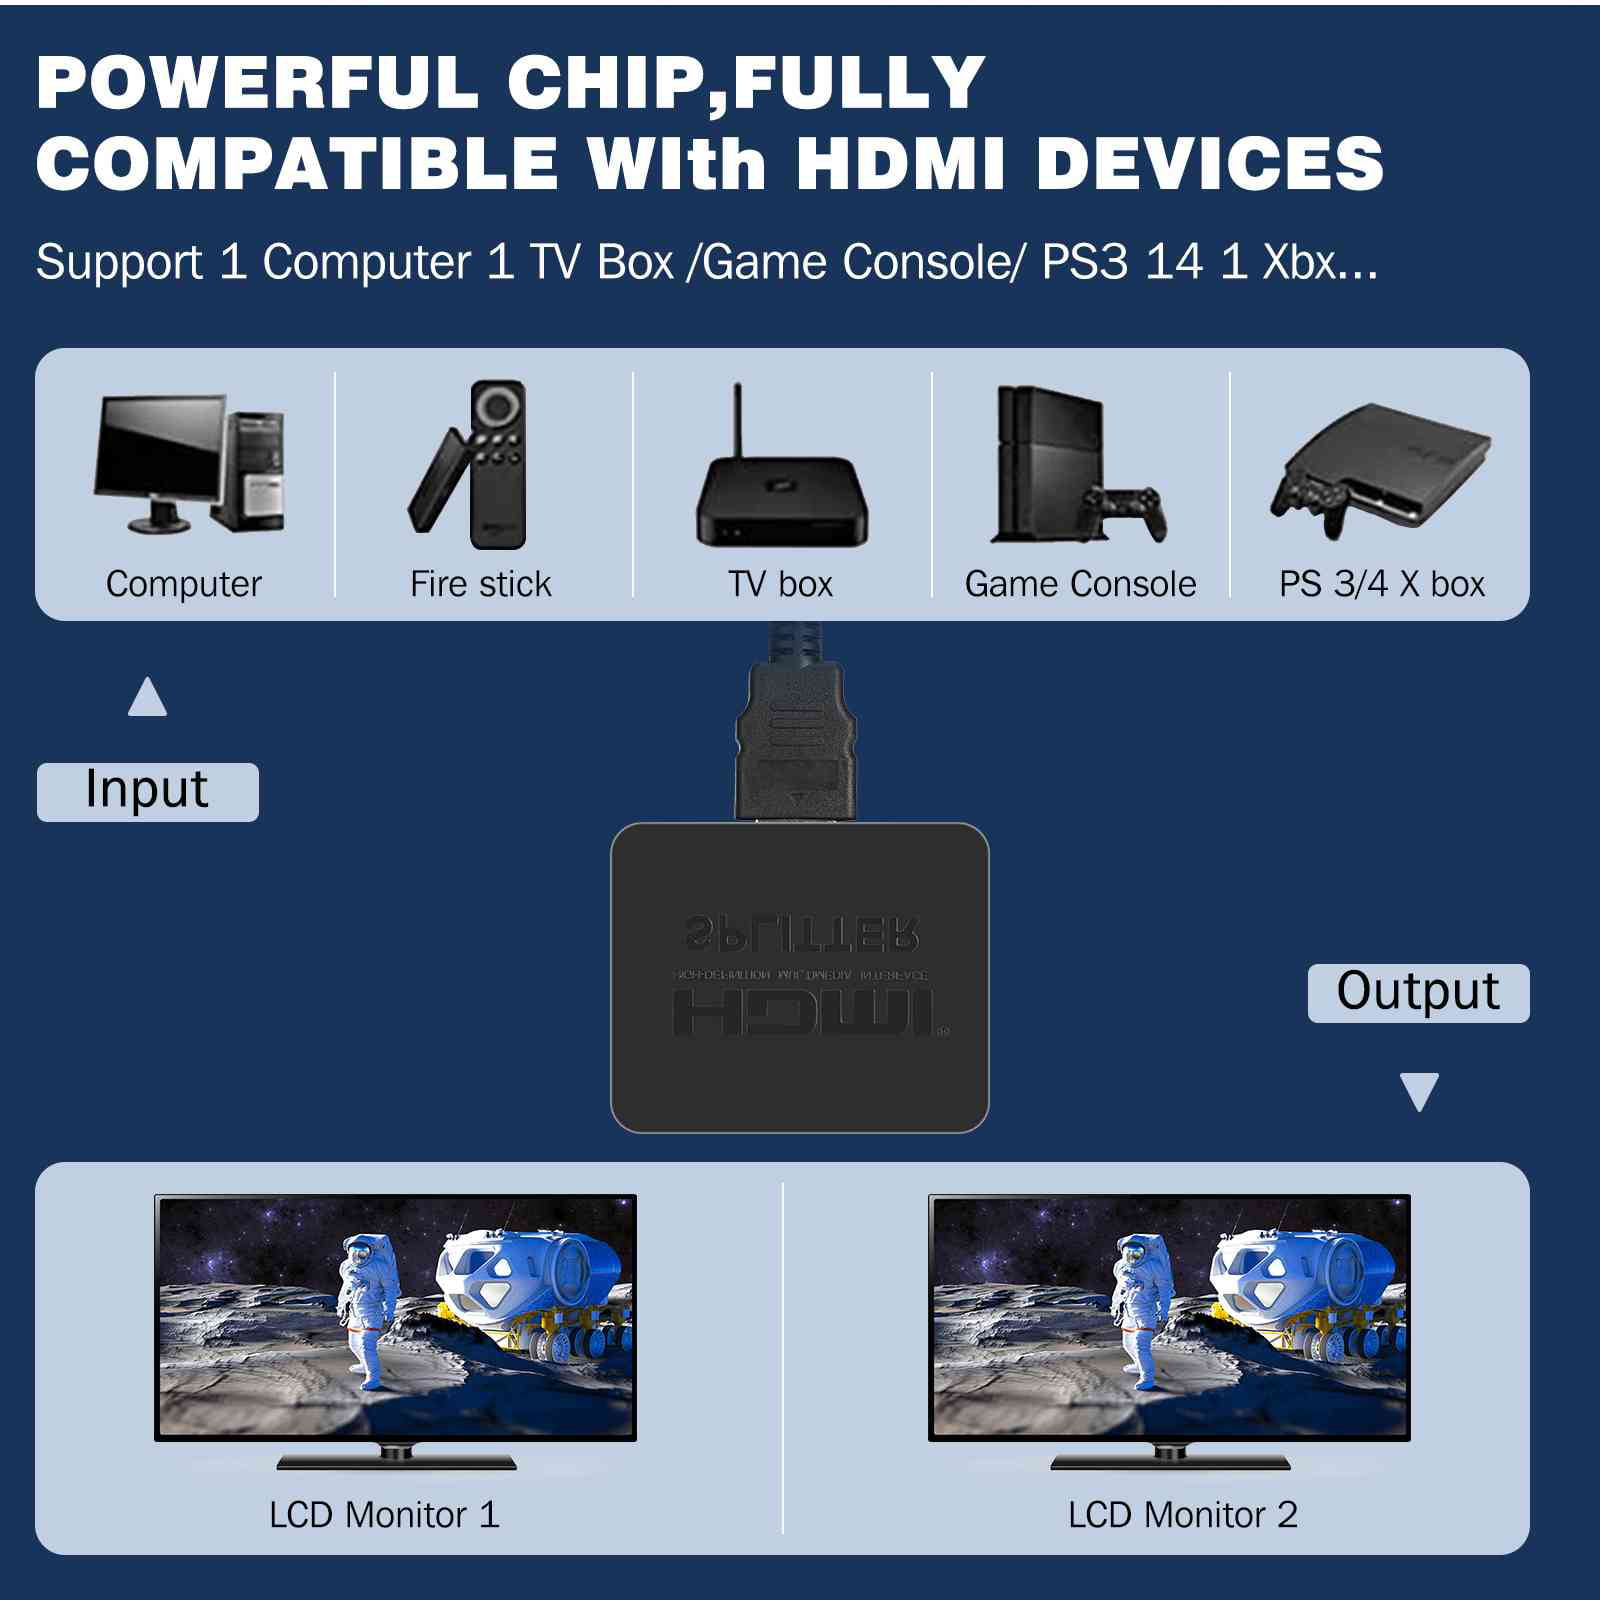 Accessoires audio Qumox 1x2 3D HDMI Switch (1 Entrée 2 Sorties) - Splitter  HDMI Répartiteur (Blu-Ray Player, PS3 PS4, Xbox 360 / One HD, etc) vers 2  HD Displays EU prise